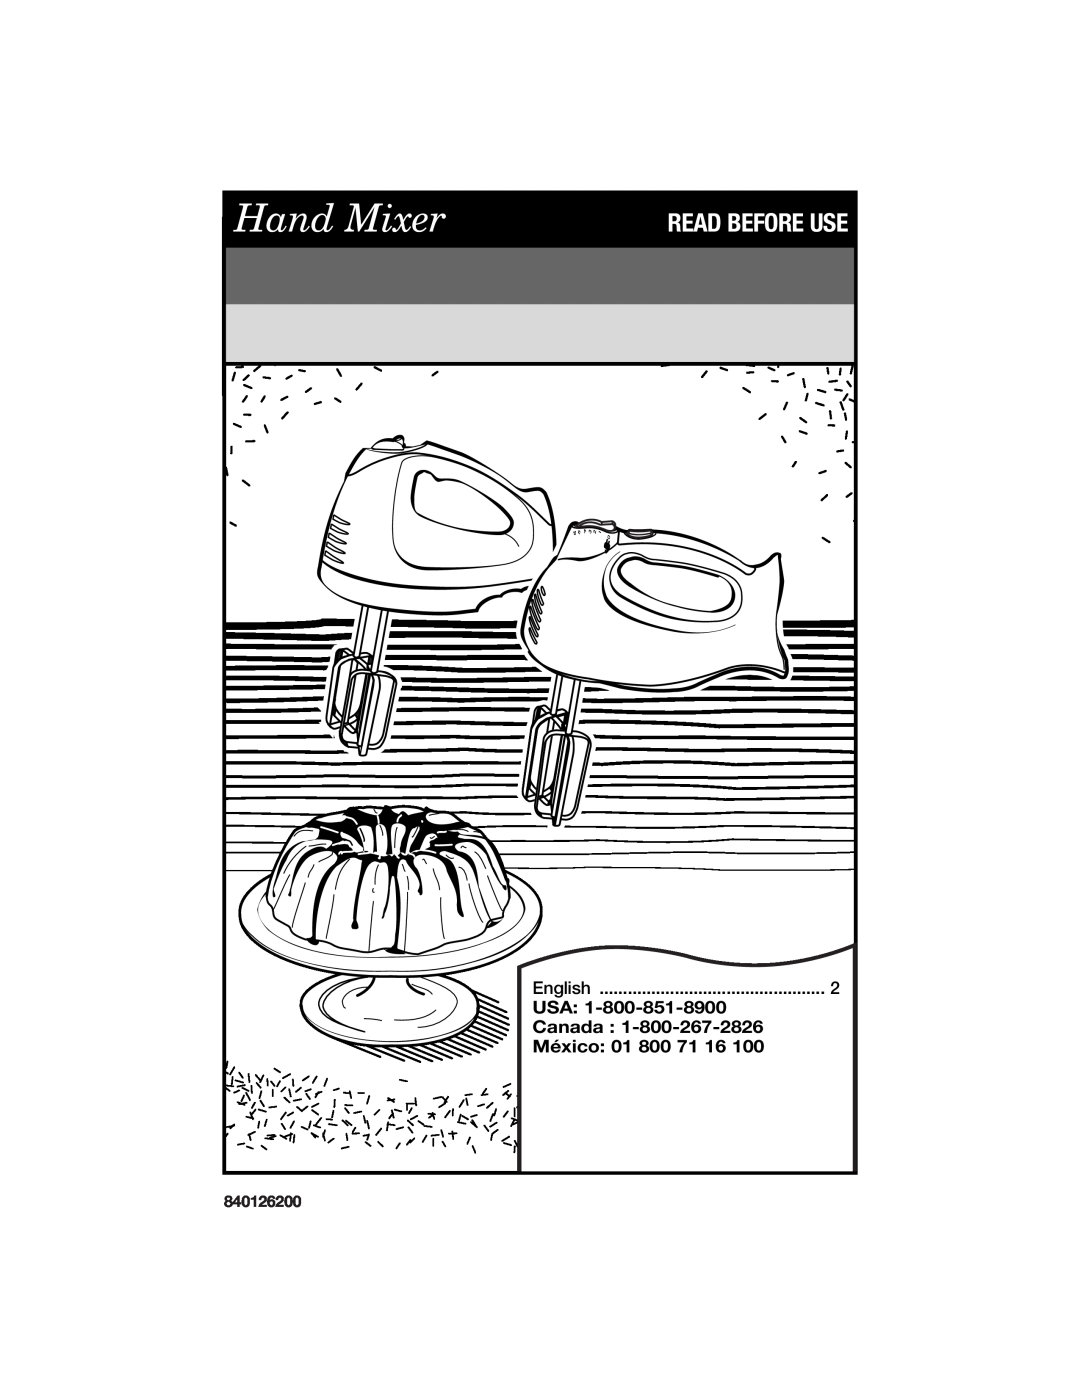 Hamilton Beach 840126200 manual English, Usa, Canada, México, Hand Mixer, Read Before Use 